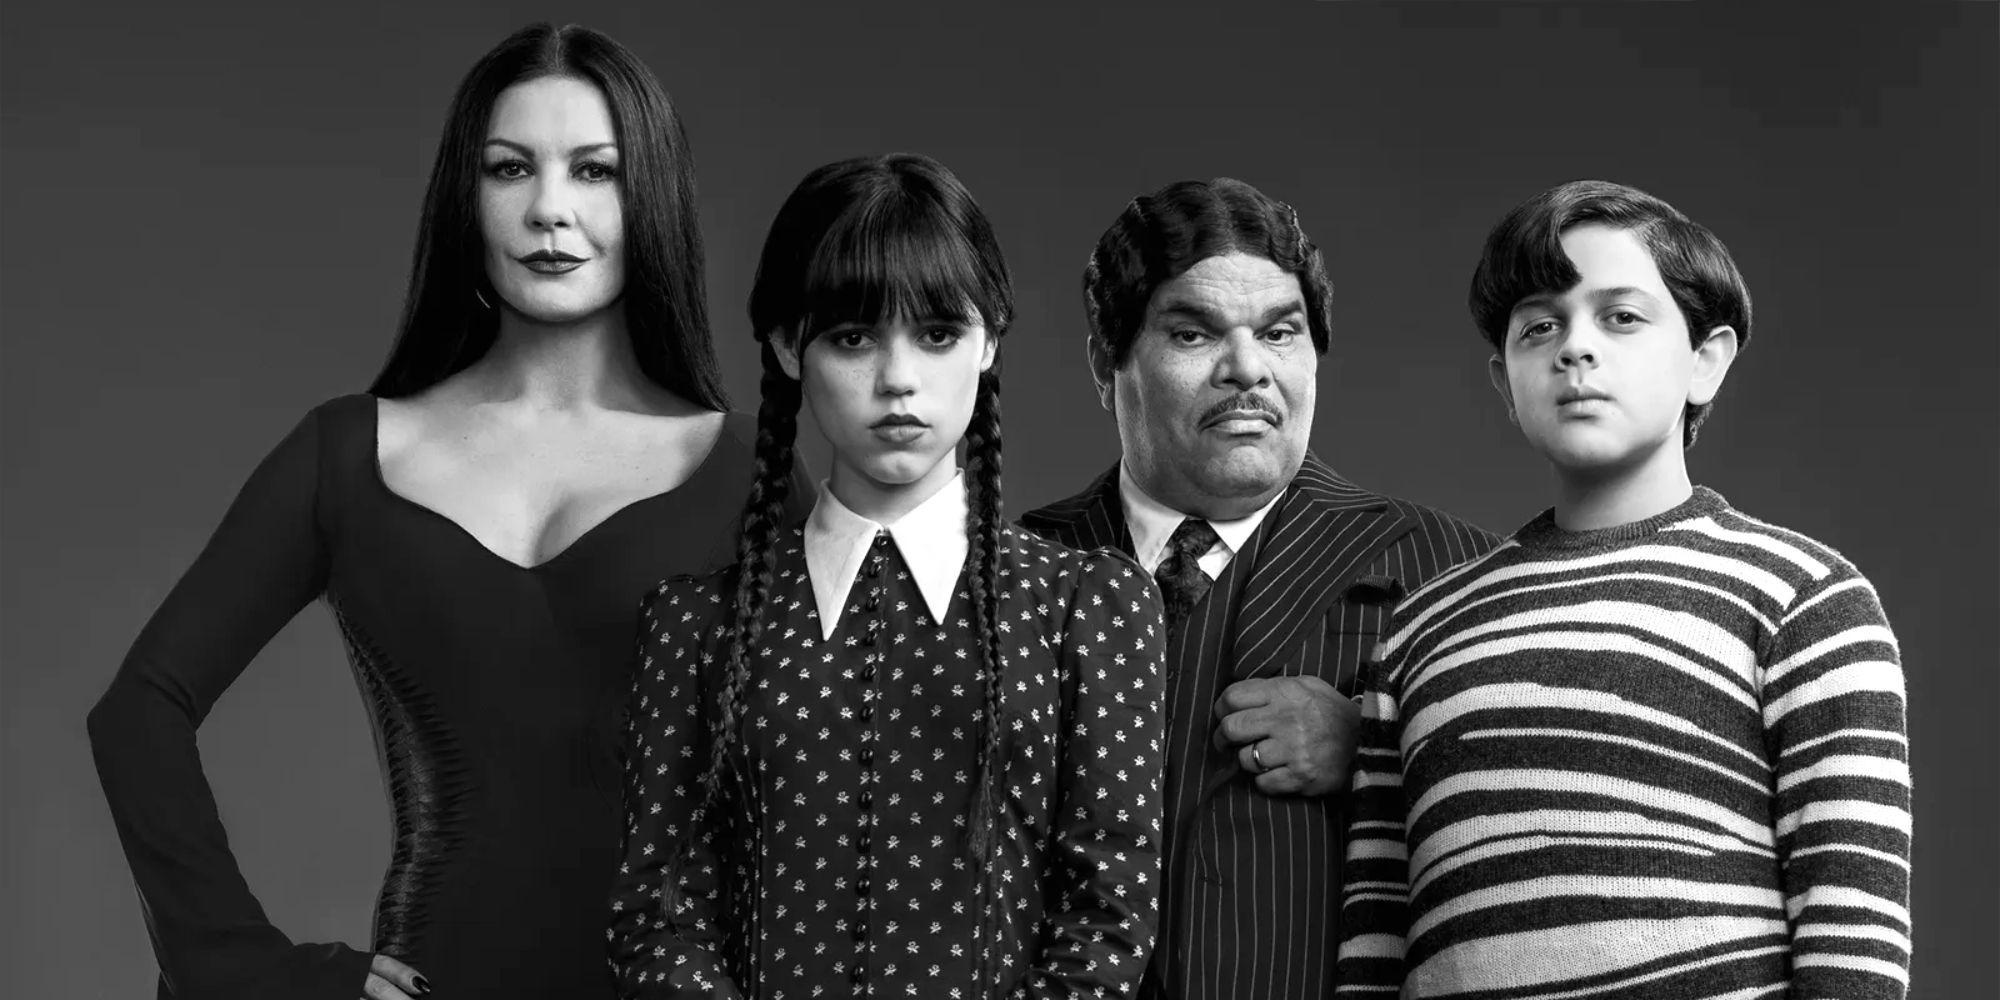 Elenco de quarta-feira da Família Addams, Morticia, quarta-feira, Gomez e Pugsley